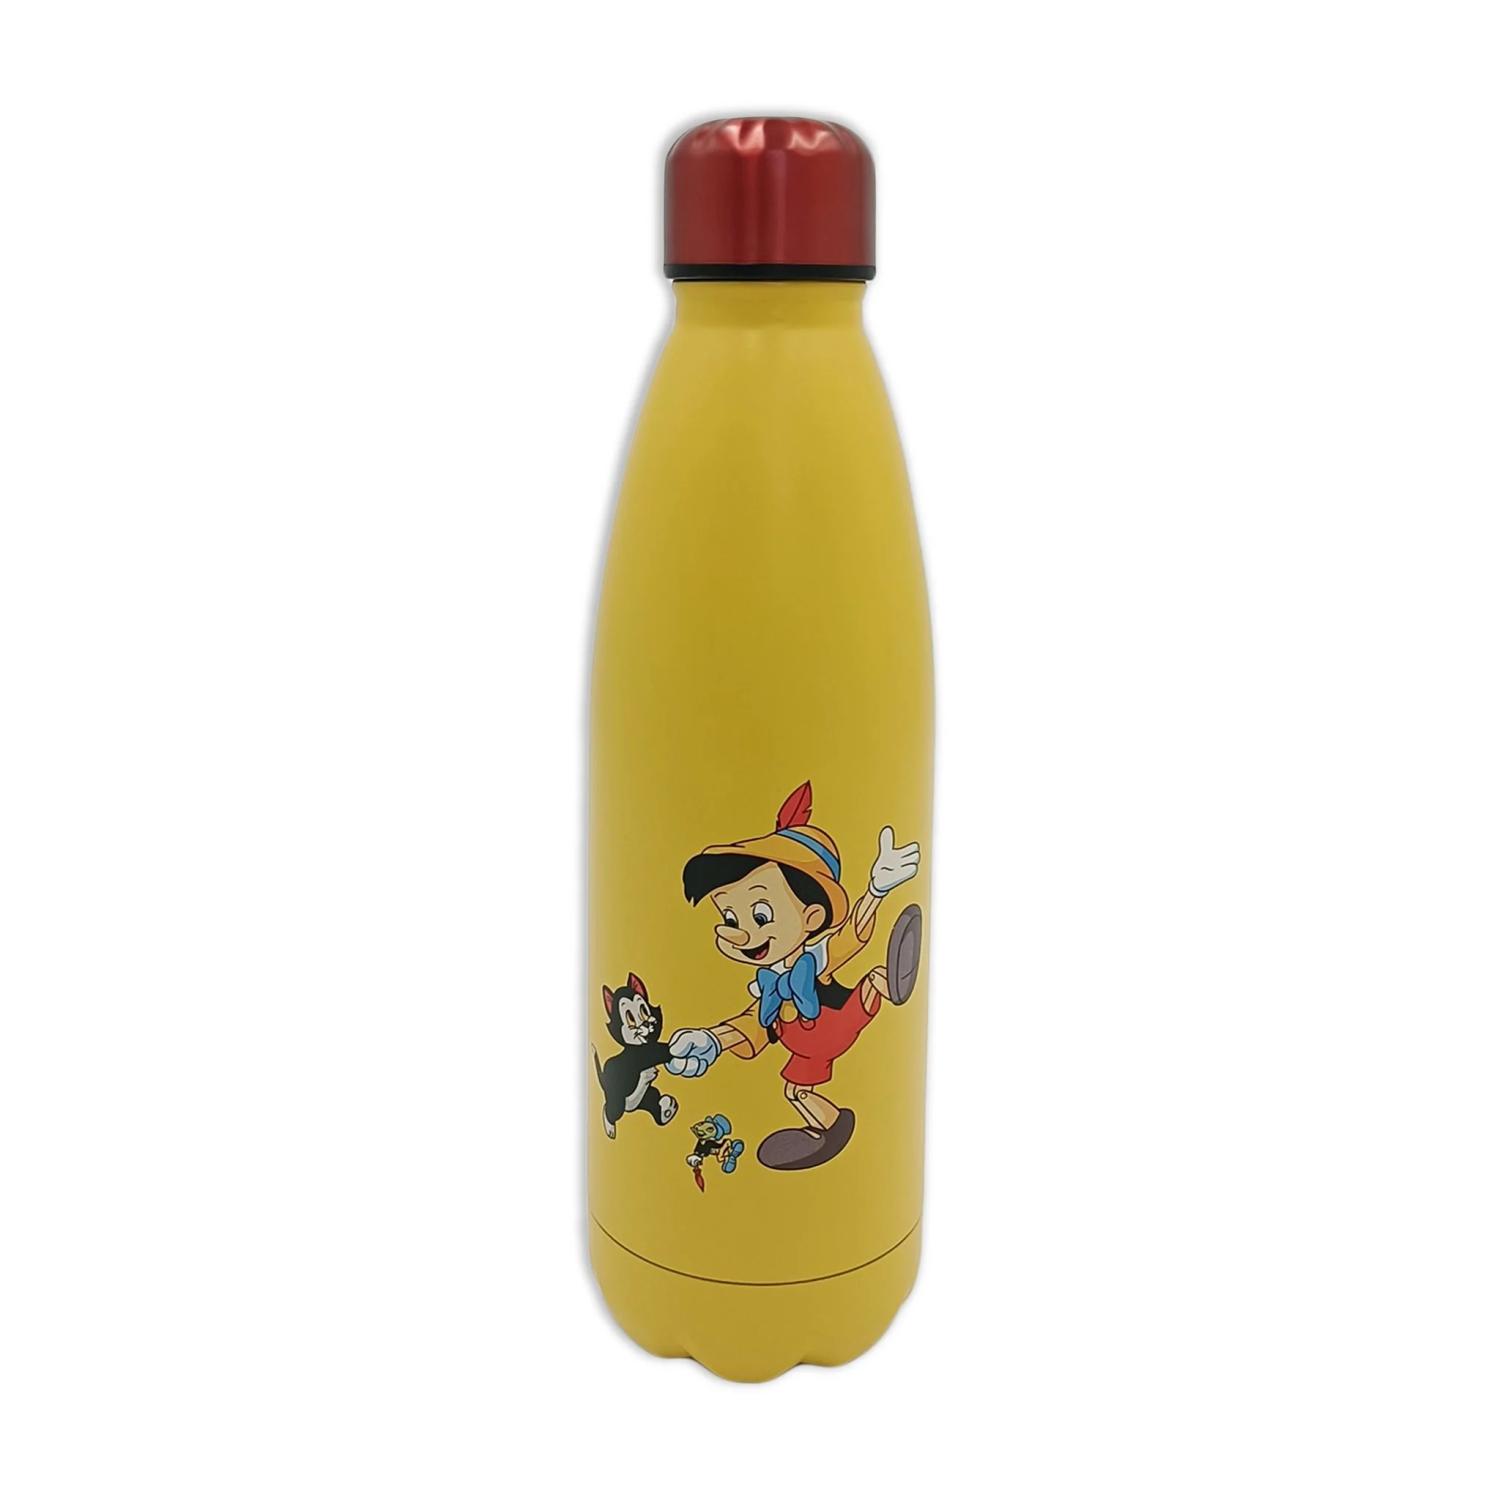 Disney - pinocchio - metal water bottle